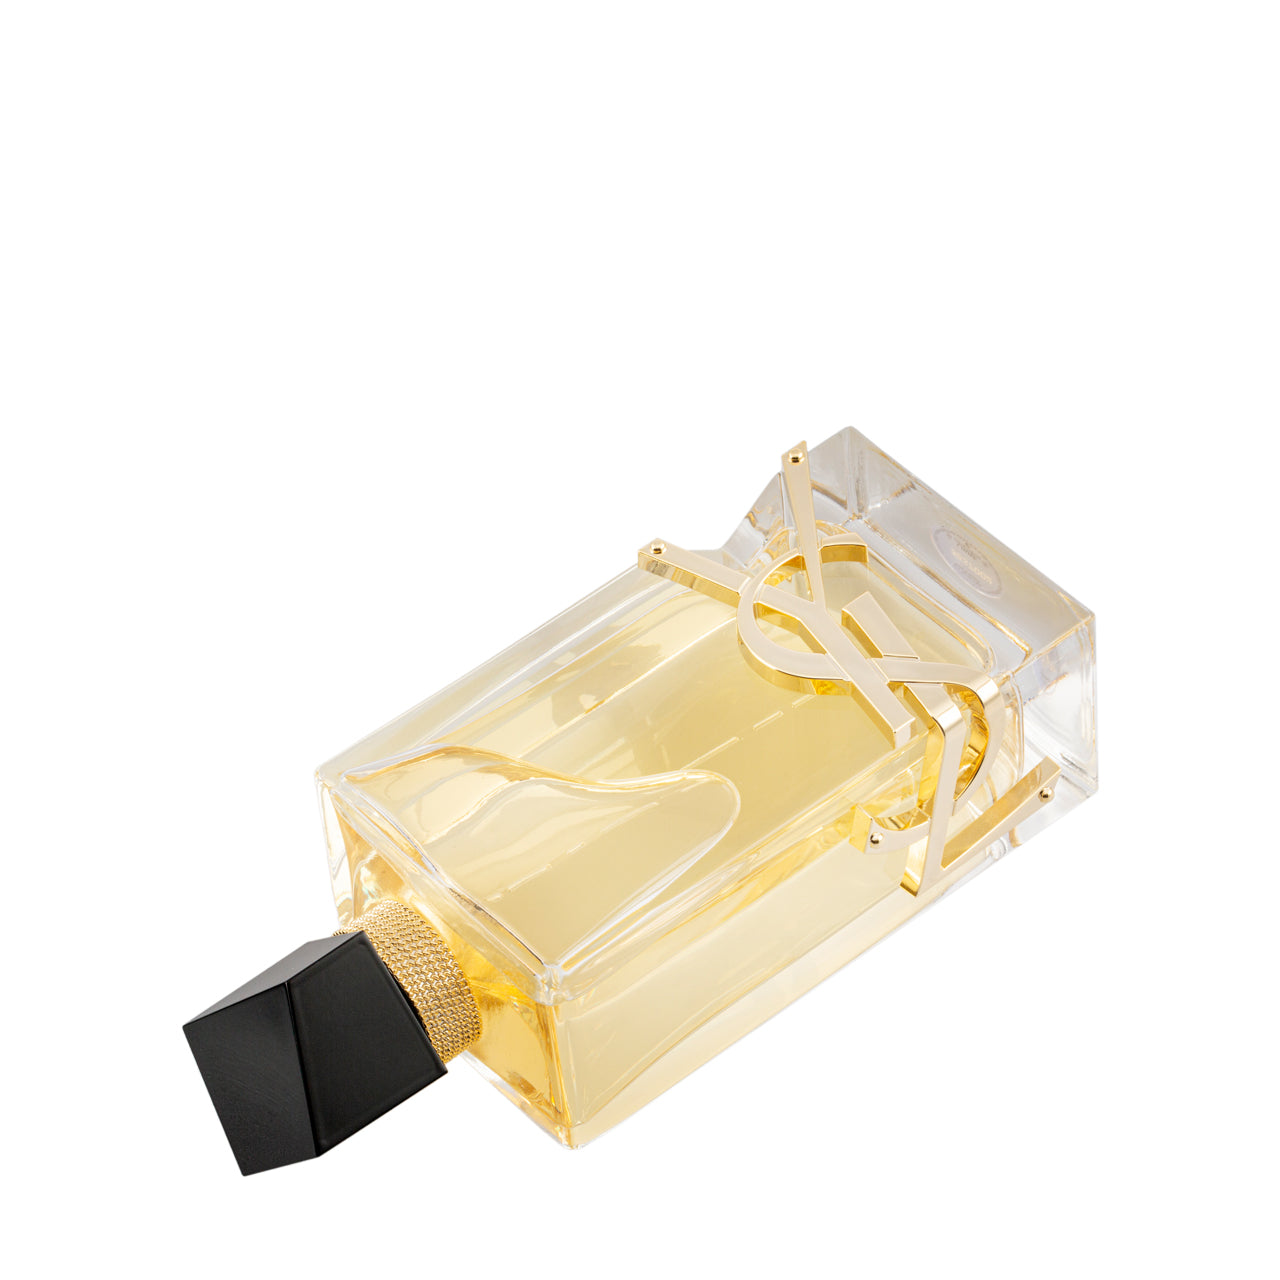 Yves Saint Laurent Libre Eau De Parfum 90ML | Sasa Global eShop